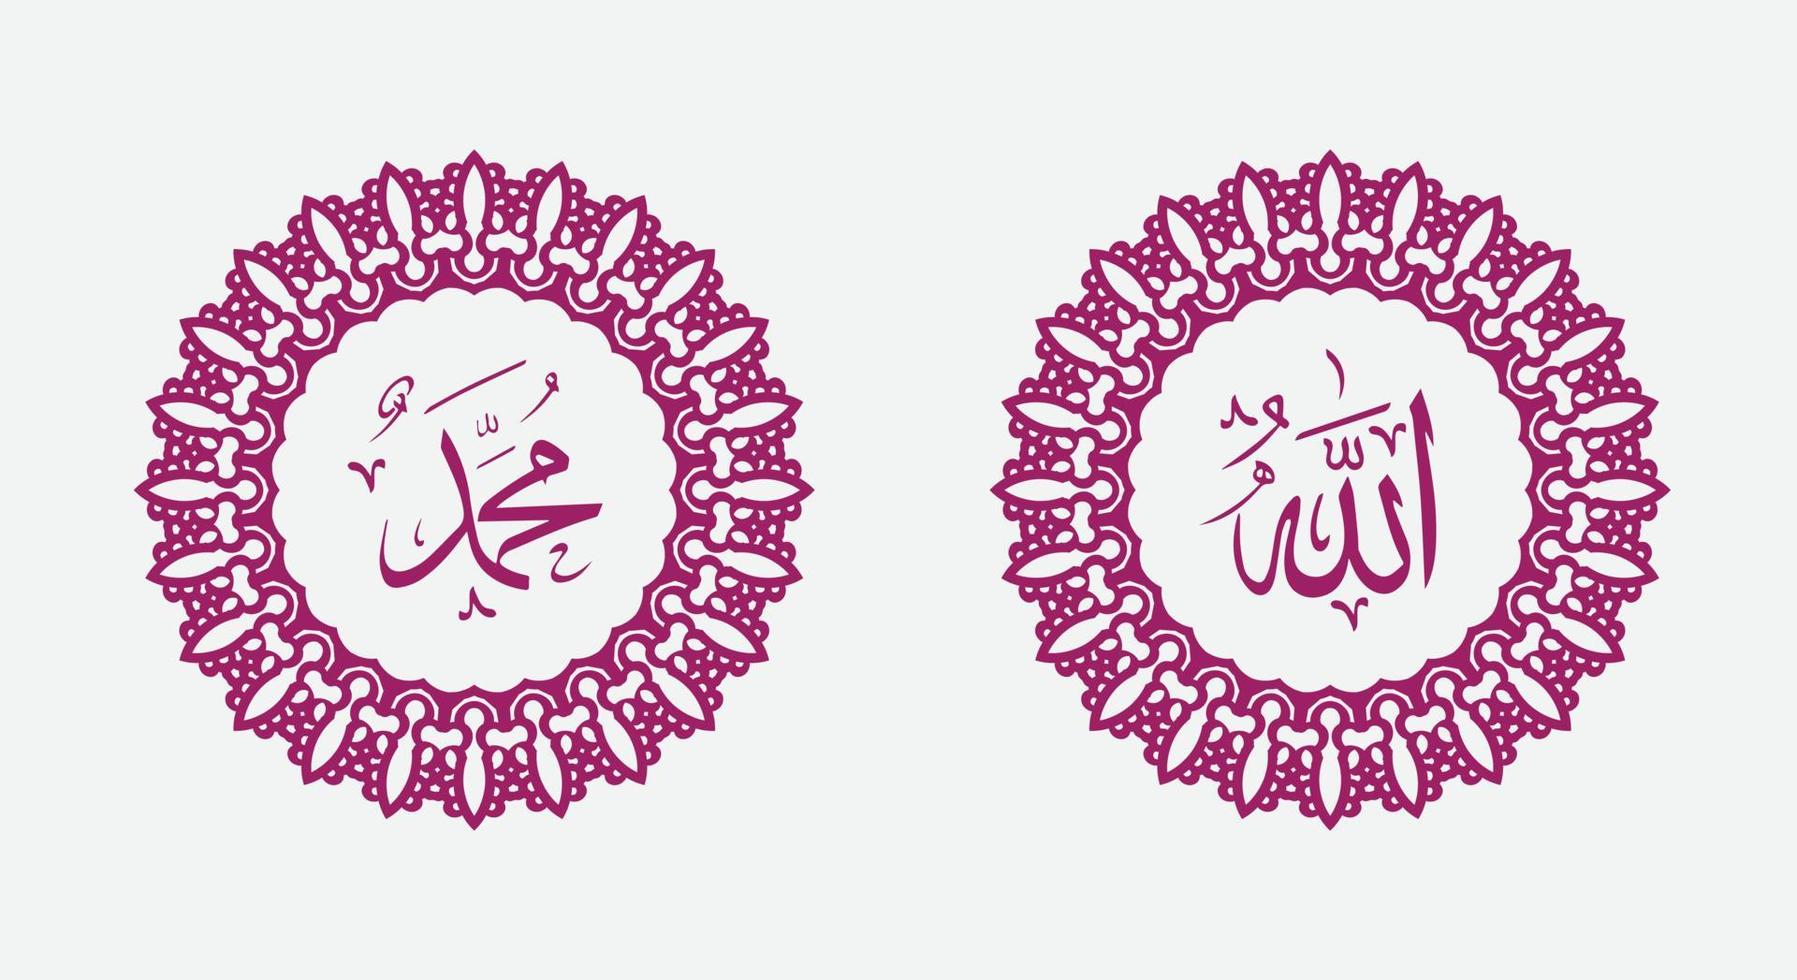 Islamitisch kalligrafische naam van god en naam van profeet mohammed met cirkel kader en elegant kleur vector